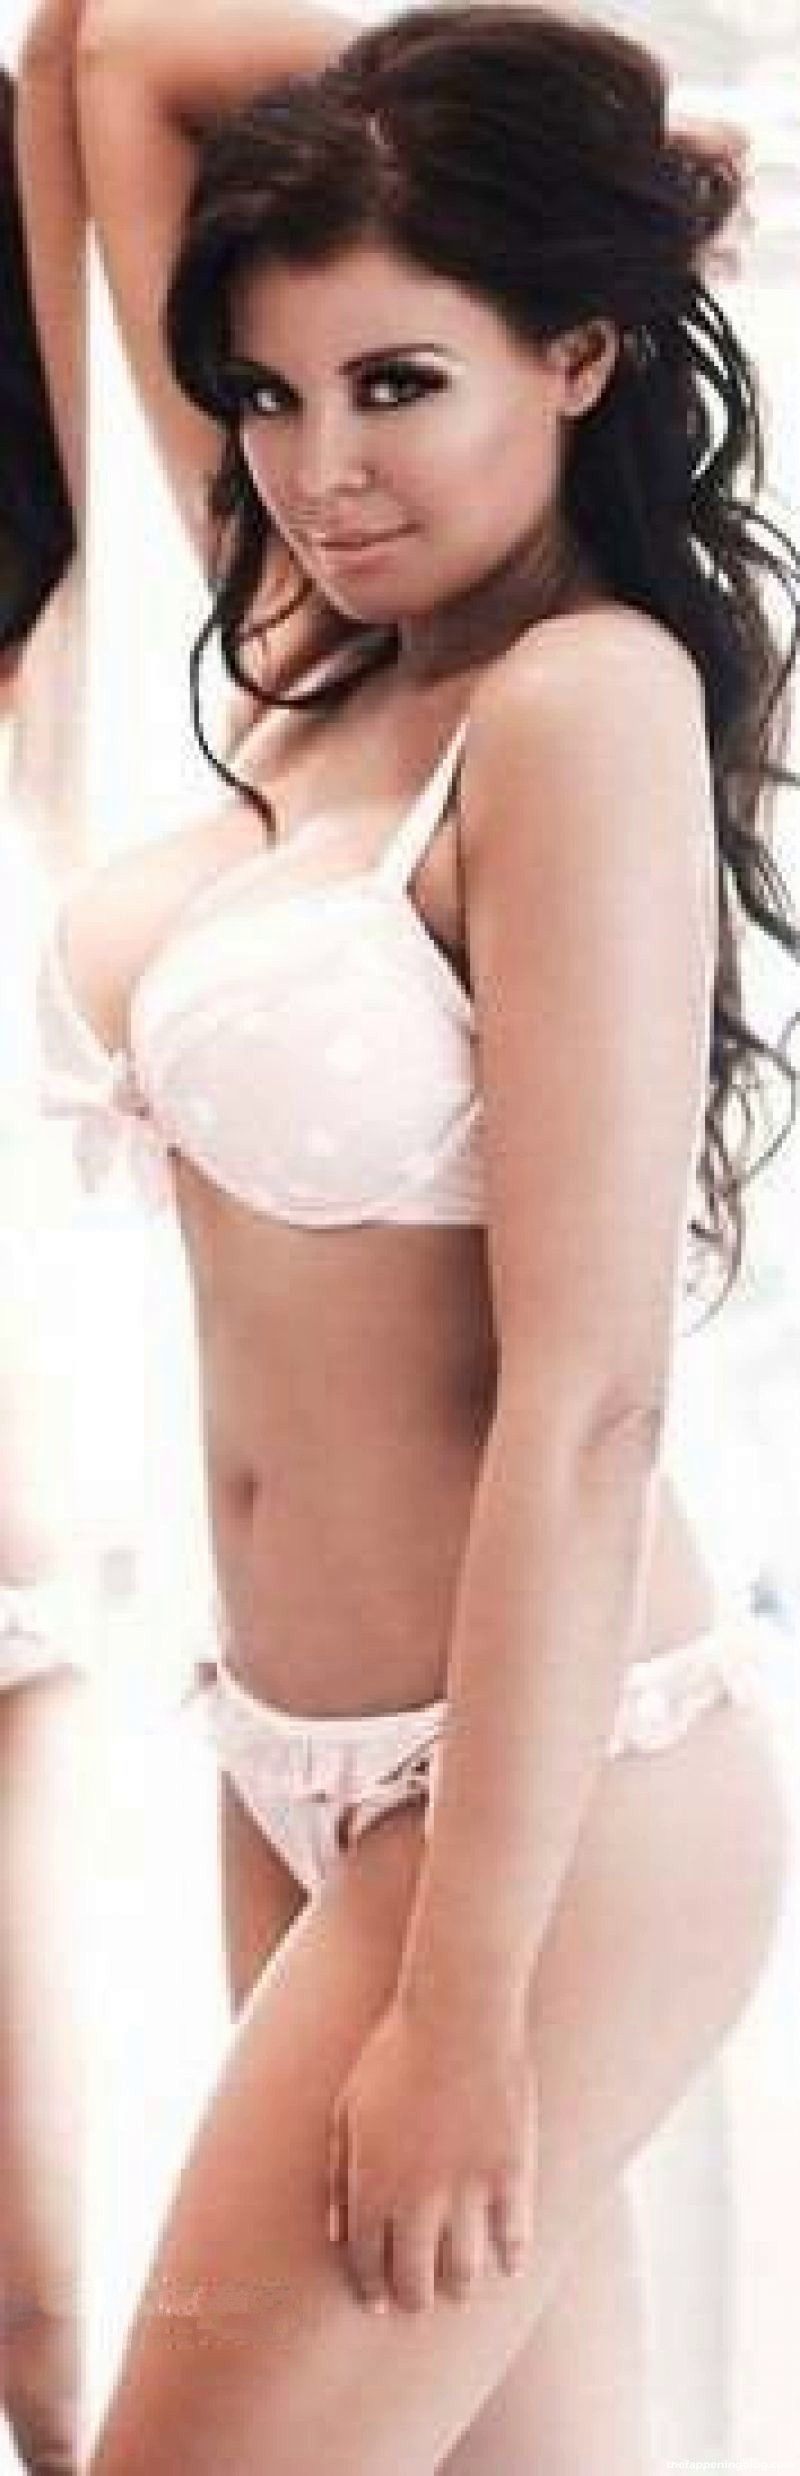 Jessica-Wright-Nude-Sexy-3-thefappeningblog.com.jpg.